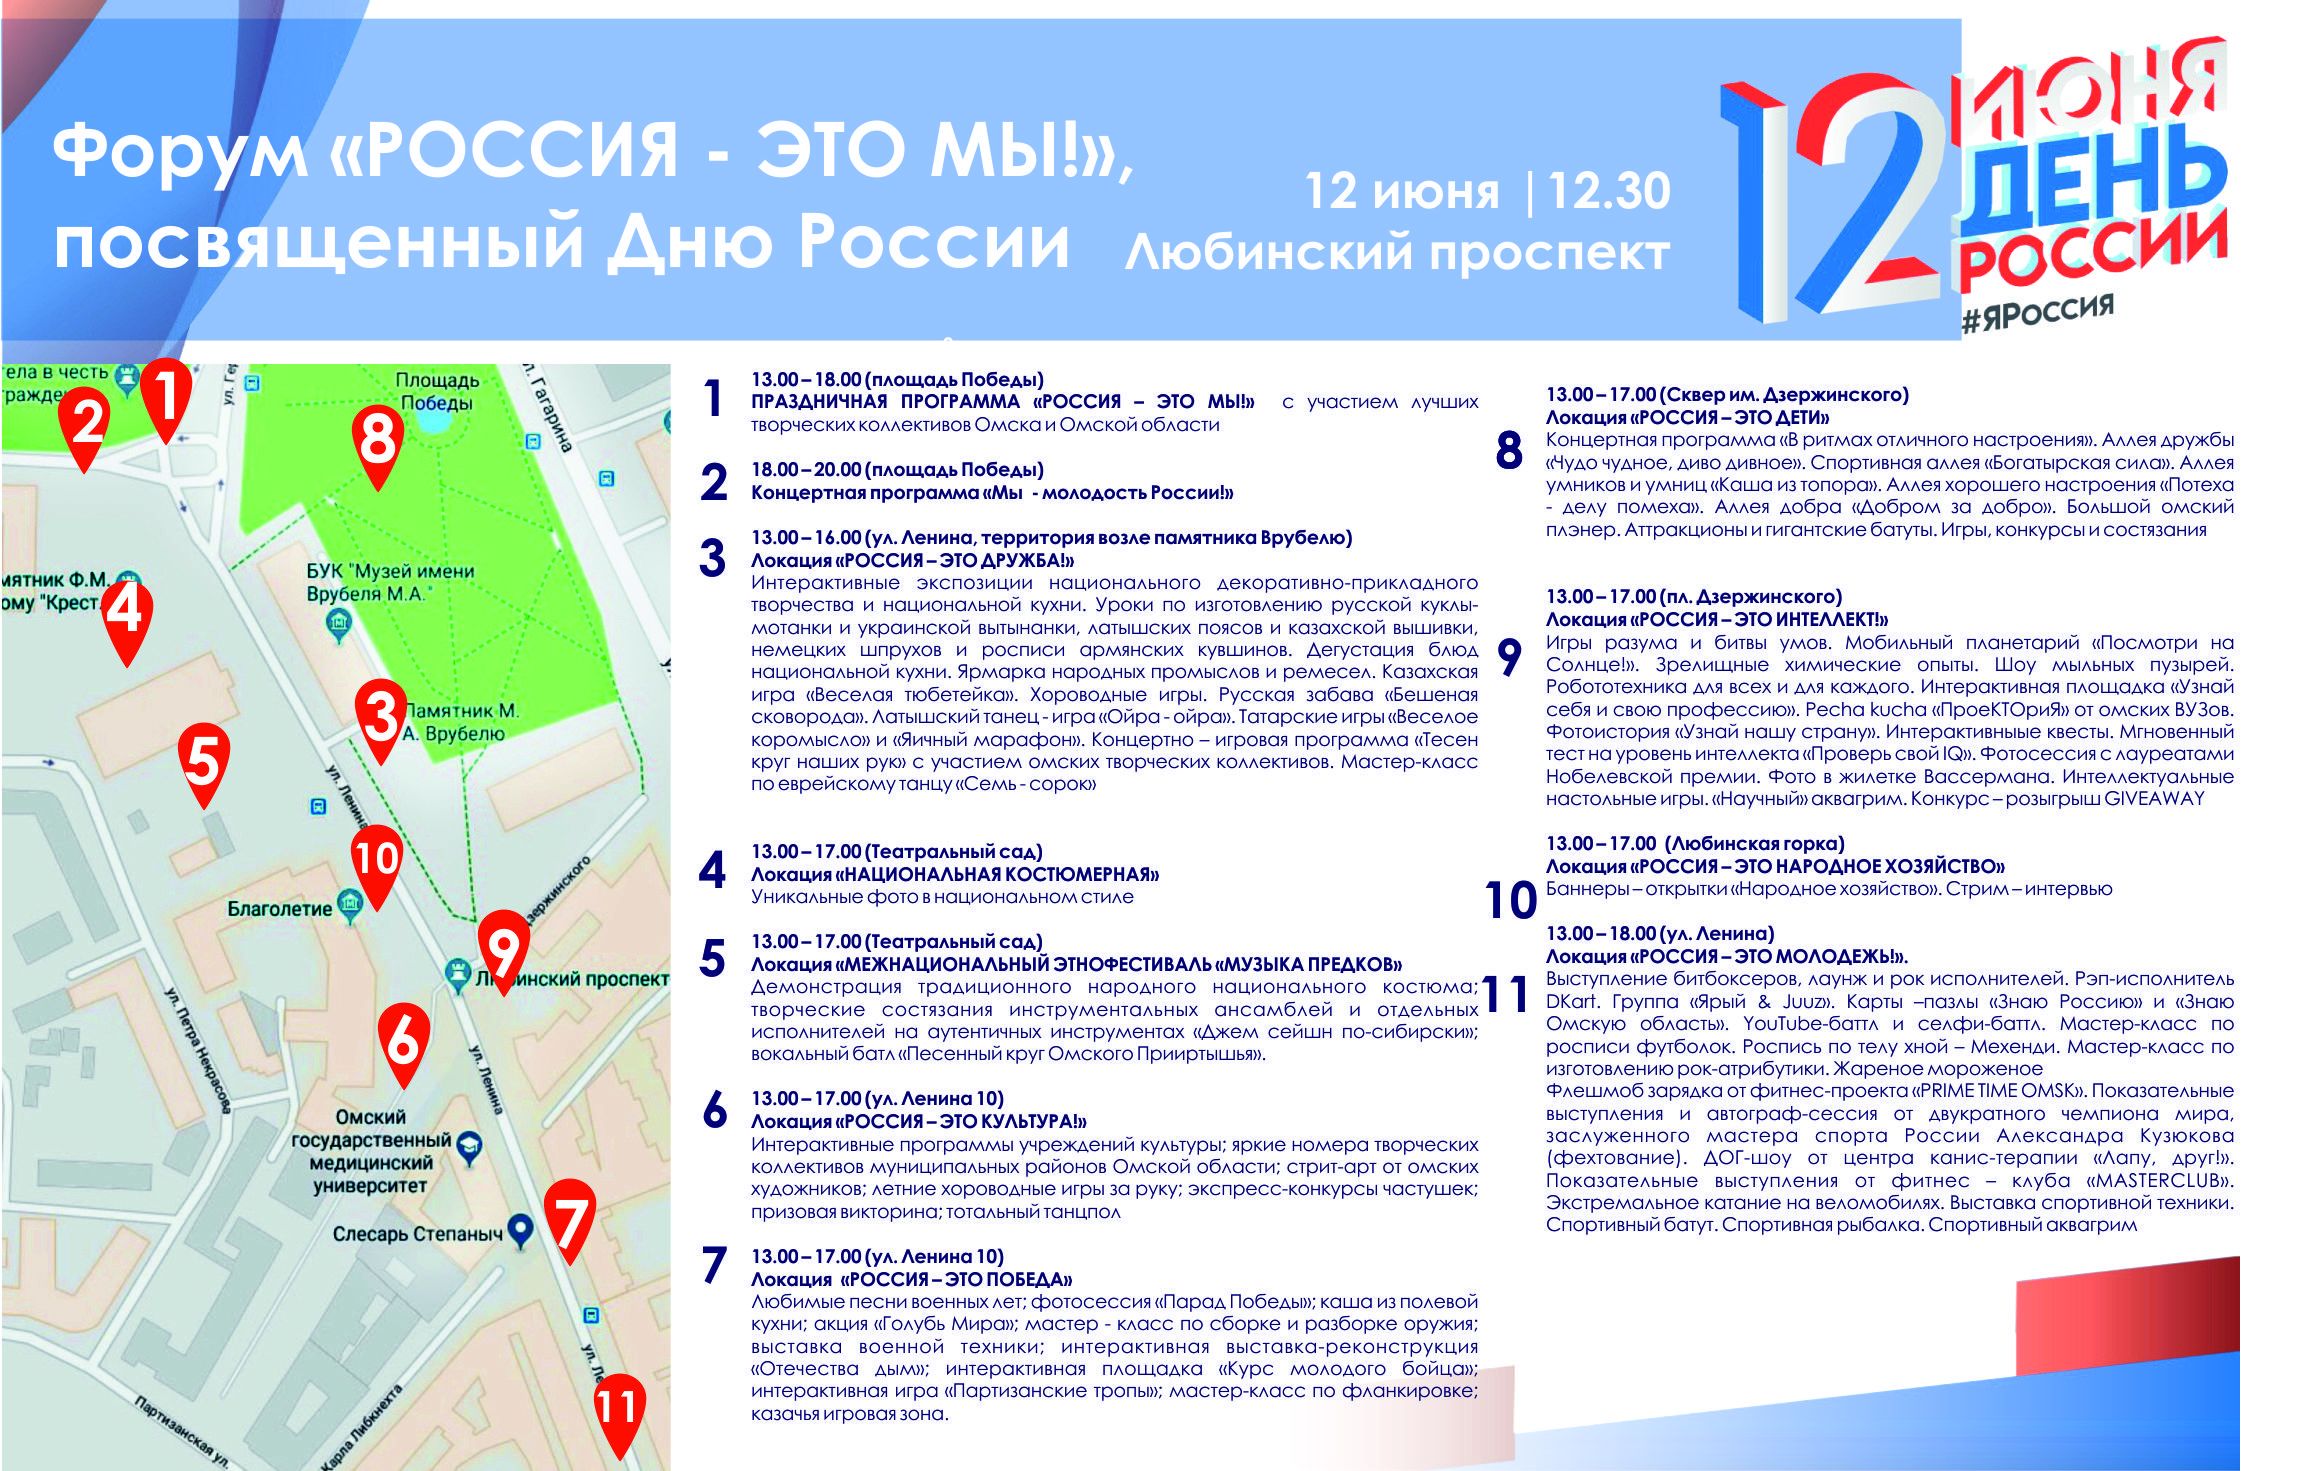 Так выглядит карта праздничных мероприятий на Любинском проспекте